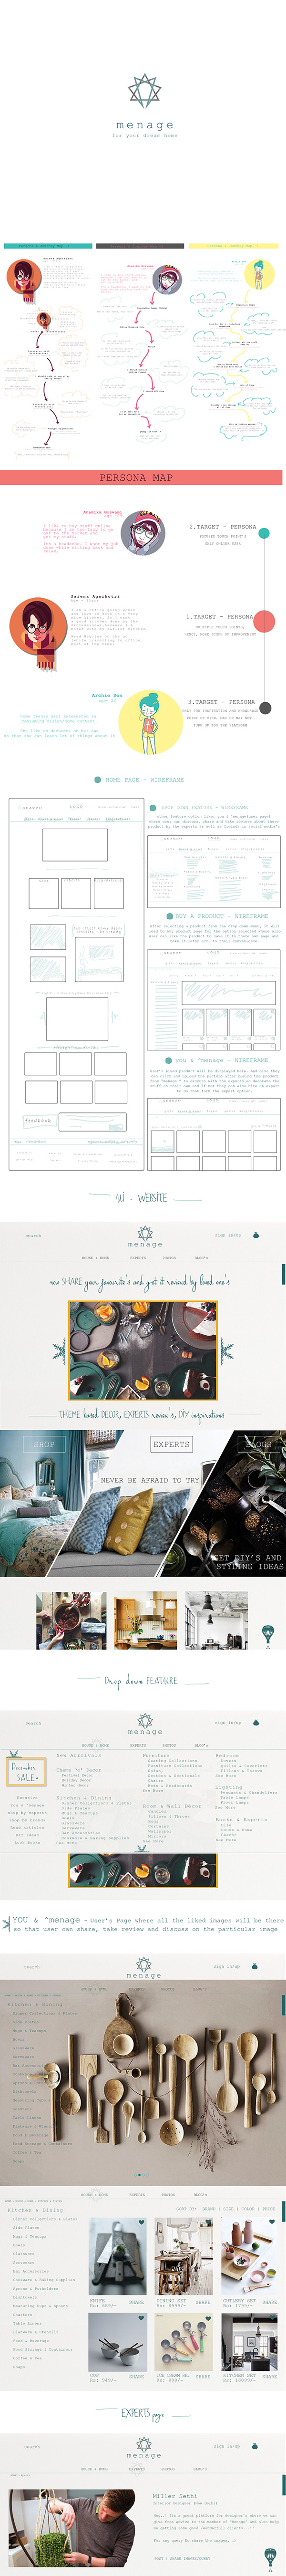 MENAGE-Home Decor, Website Design